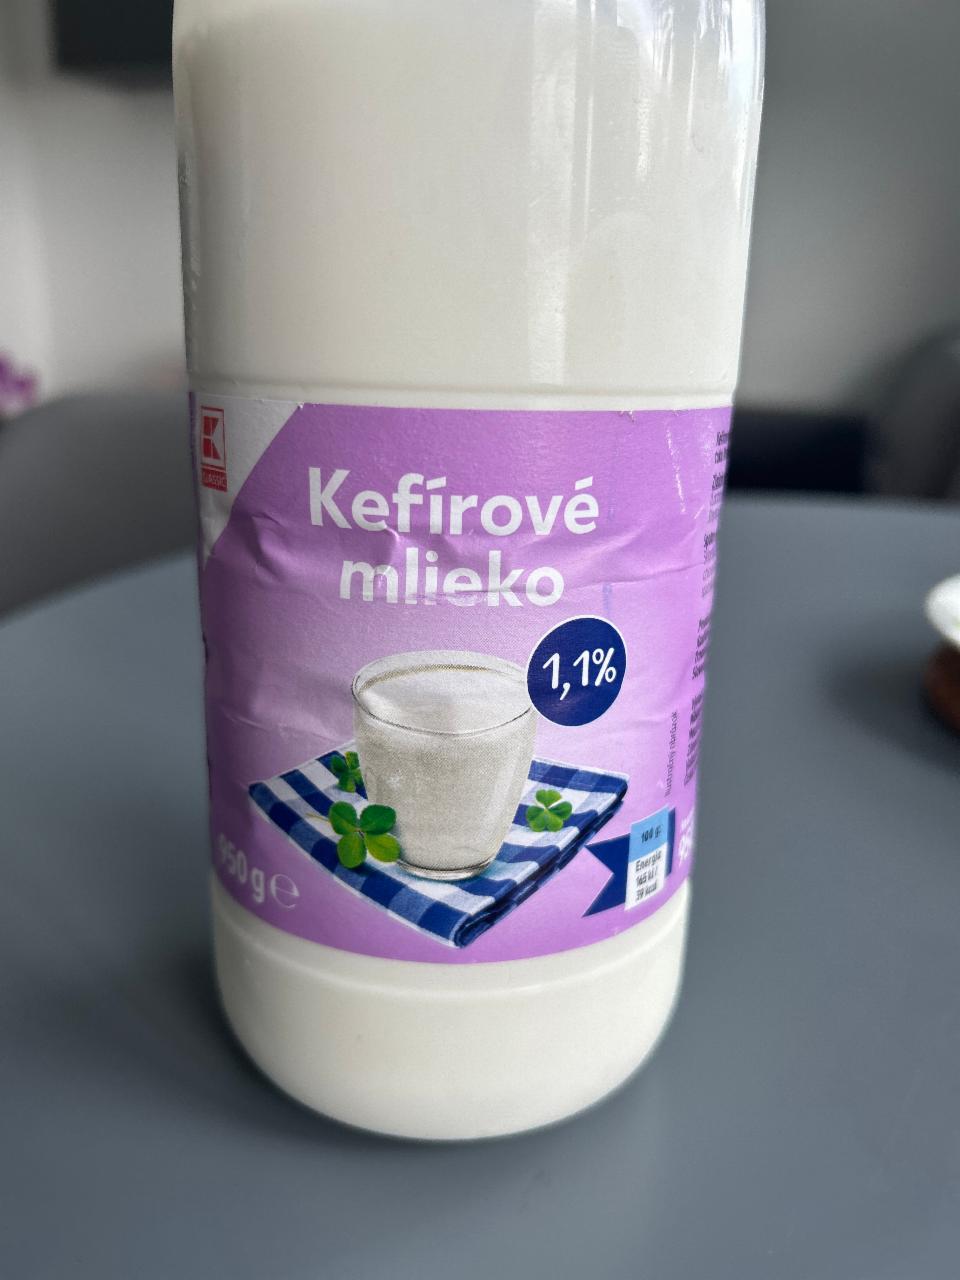 Фото - Kefírové mlieko 1.1% K-Classic